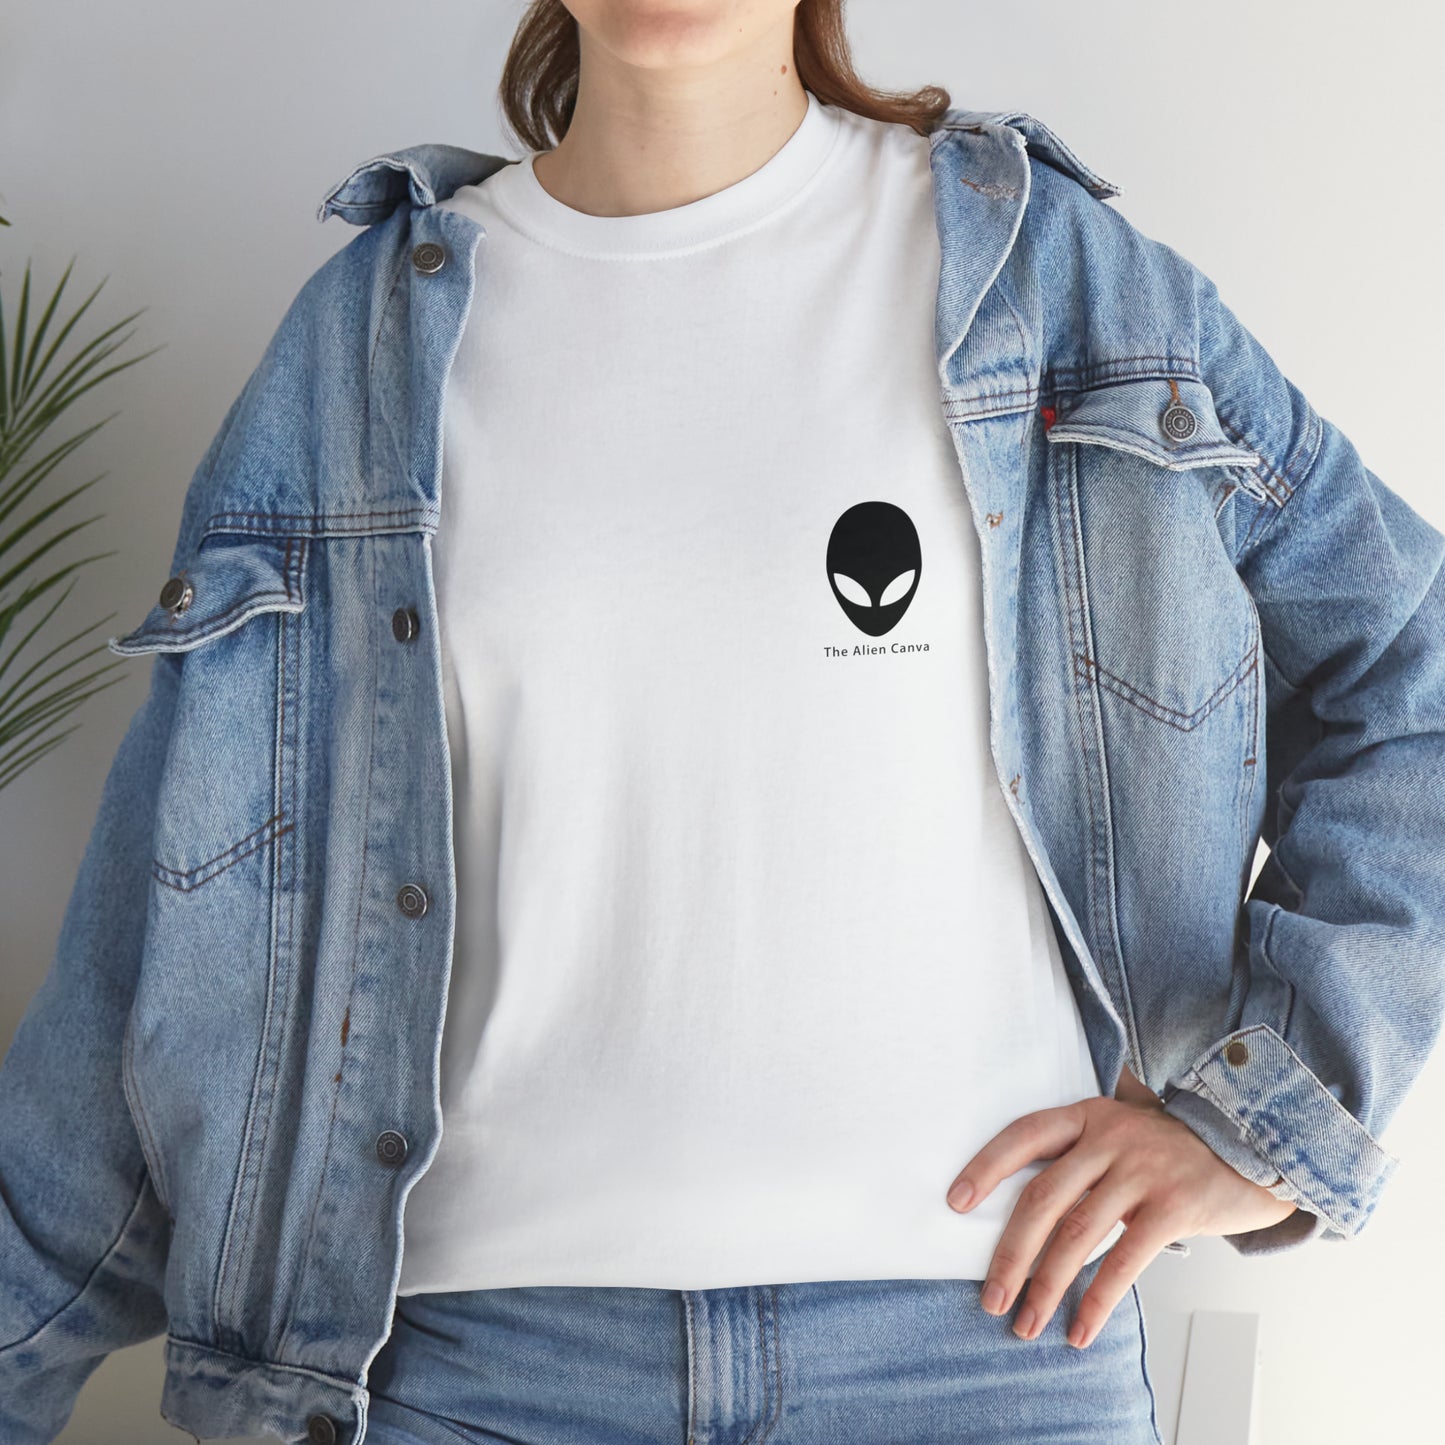 "A Breezy Skyscape: Una combinación de tradición y modernidad" - La camiseta Alien